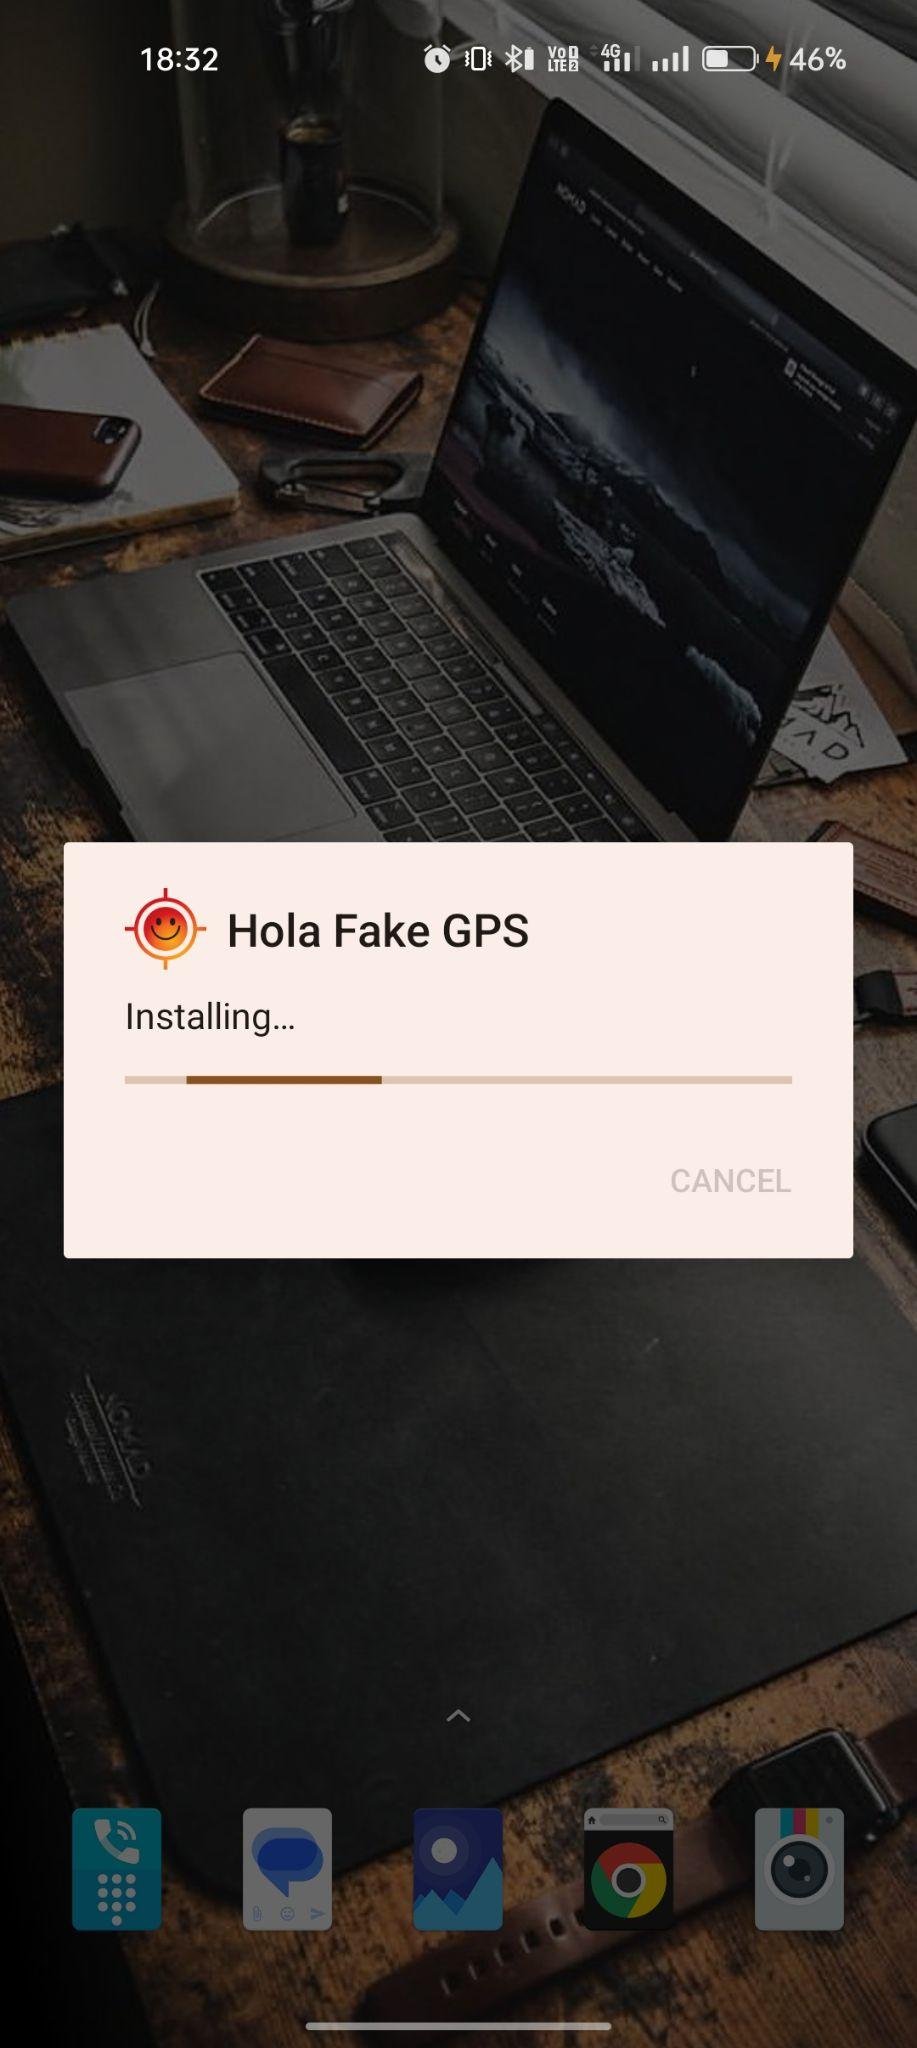 Hola Fake GPS apk installing